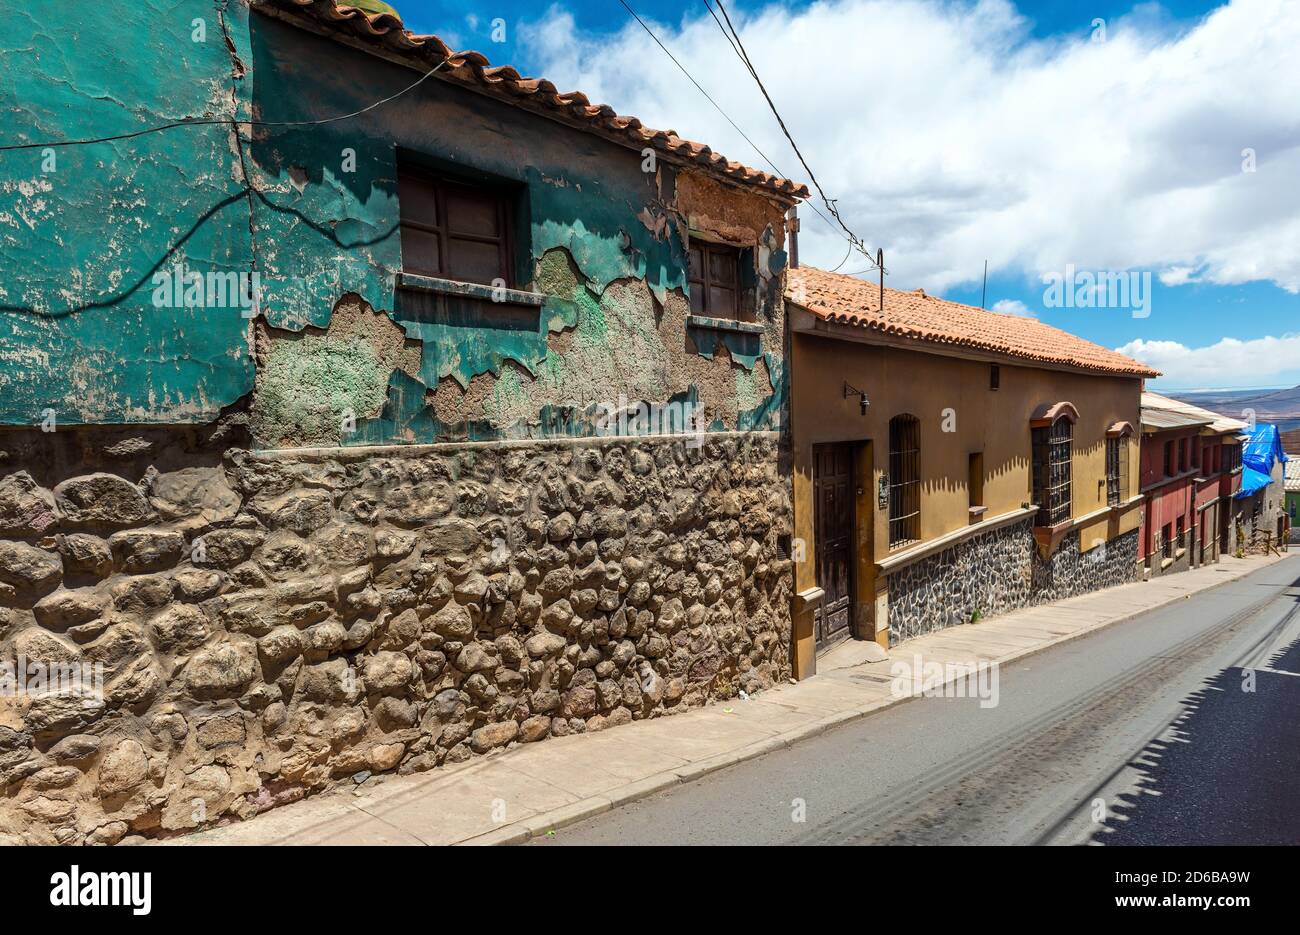 Strada con architettura facciata in stile coloniale, Potosi, Bolivia. Foto Stock